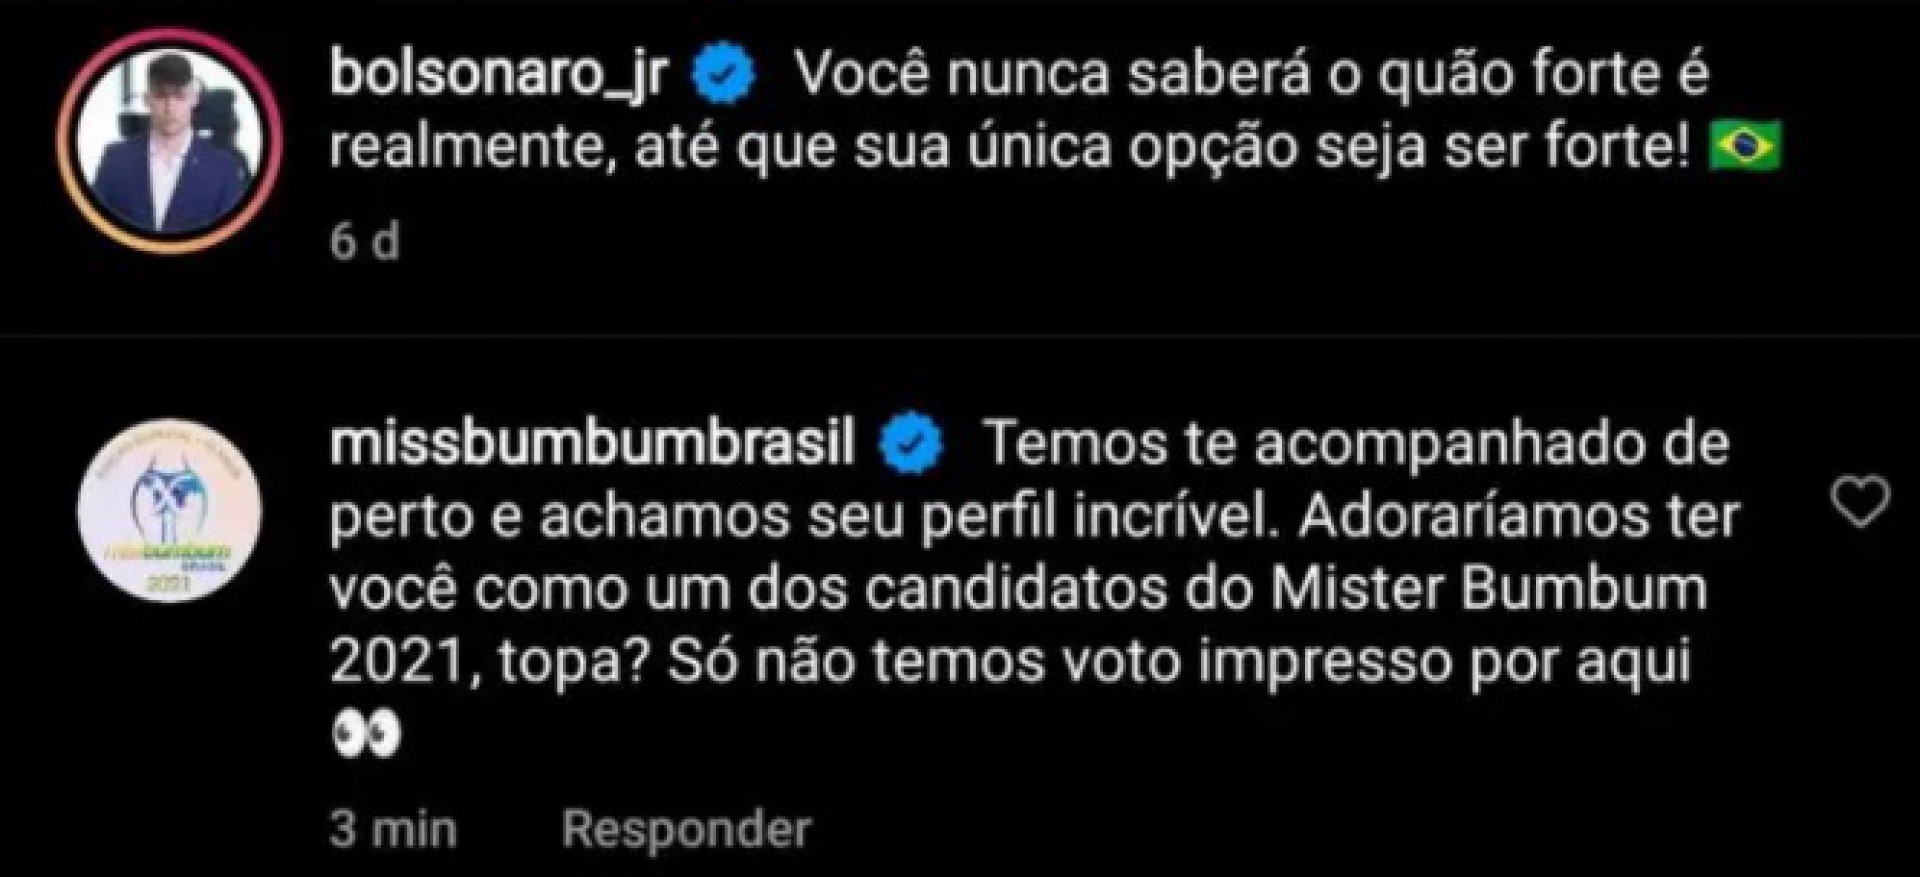 Renan Bolsonaro, o quarto filho do presidente Jair Bolsonaro (sem partido), foi convidado para participar do Mister Bumbum 2021 